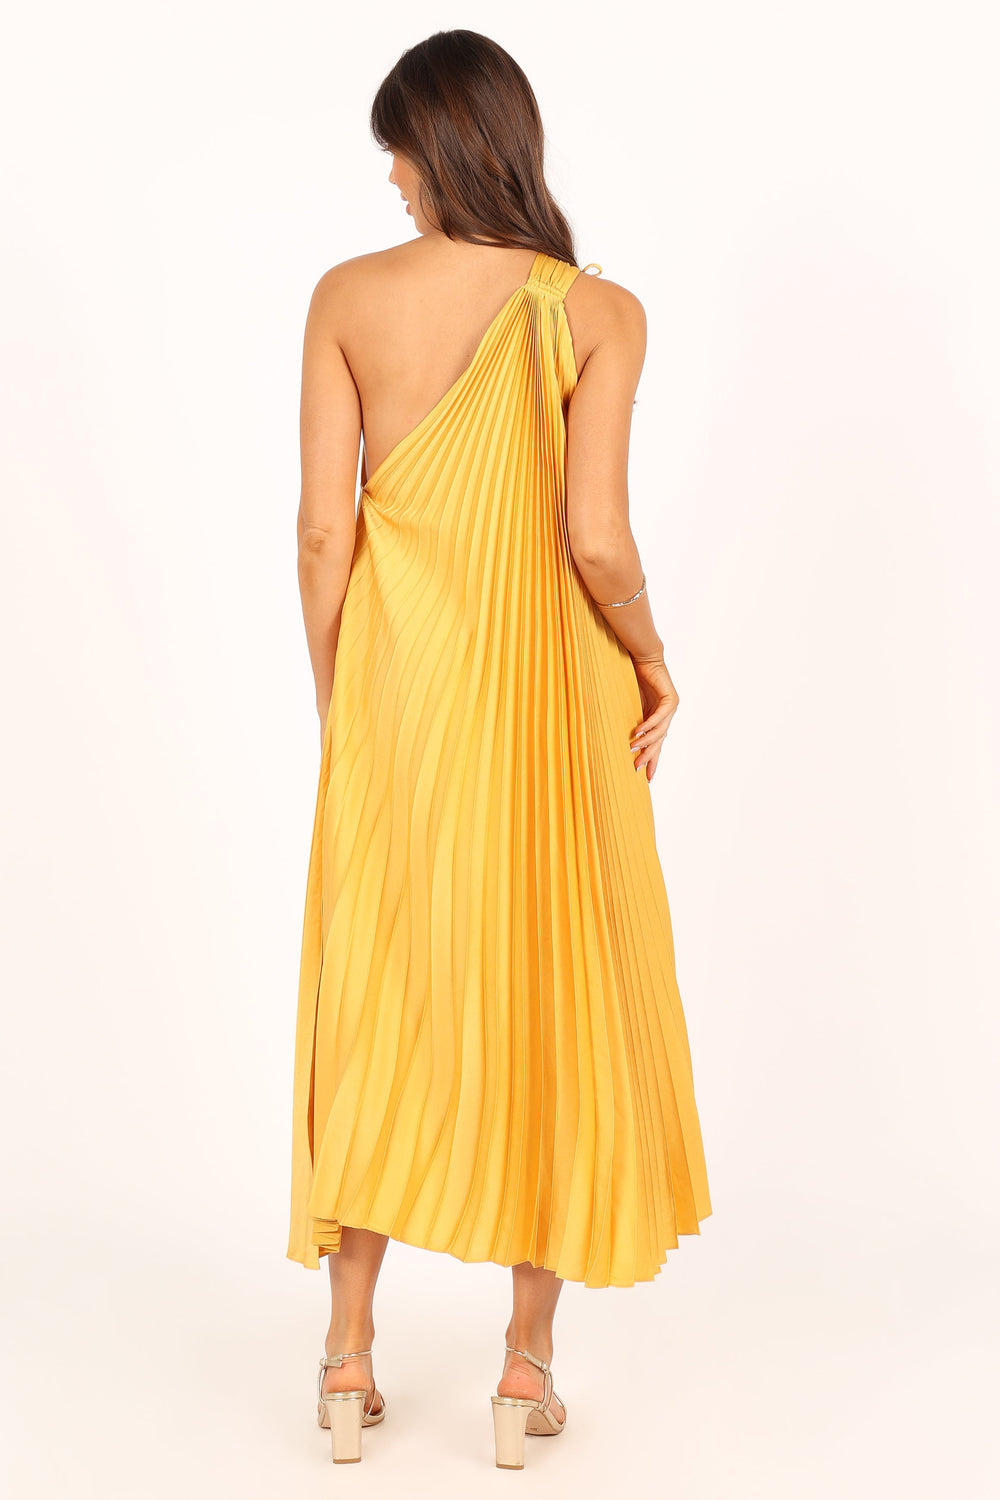 DRESSES @Cali One Shoulder Maxi Dress - Saffron